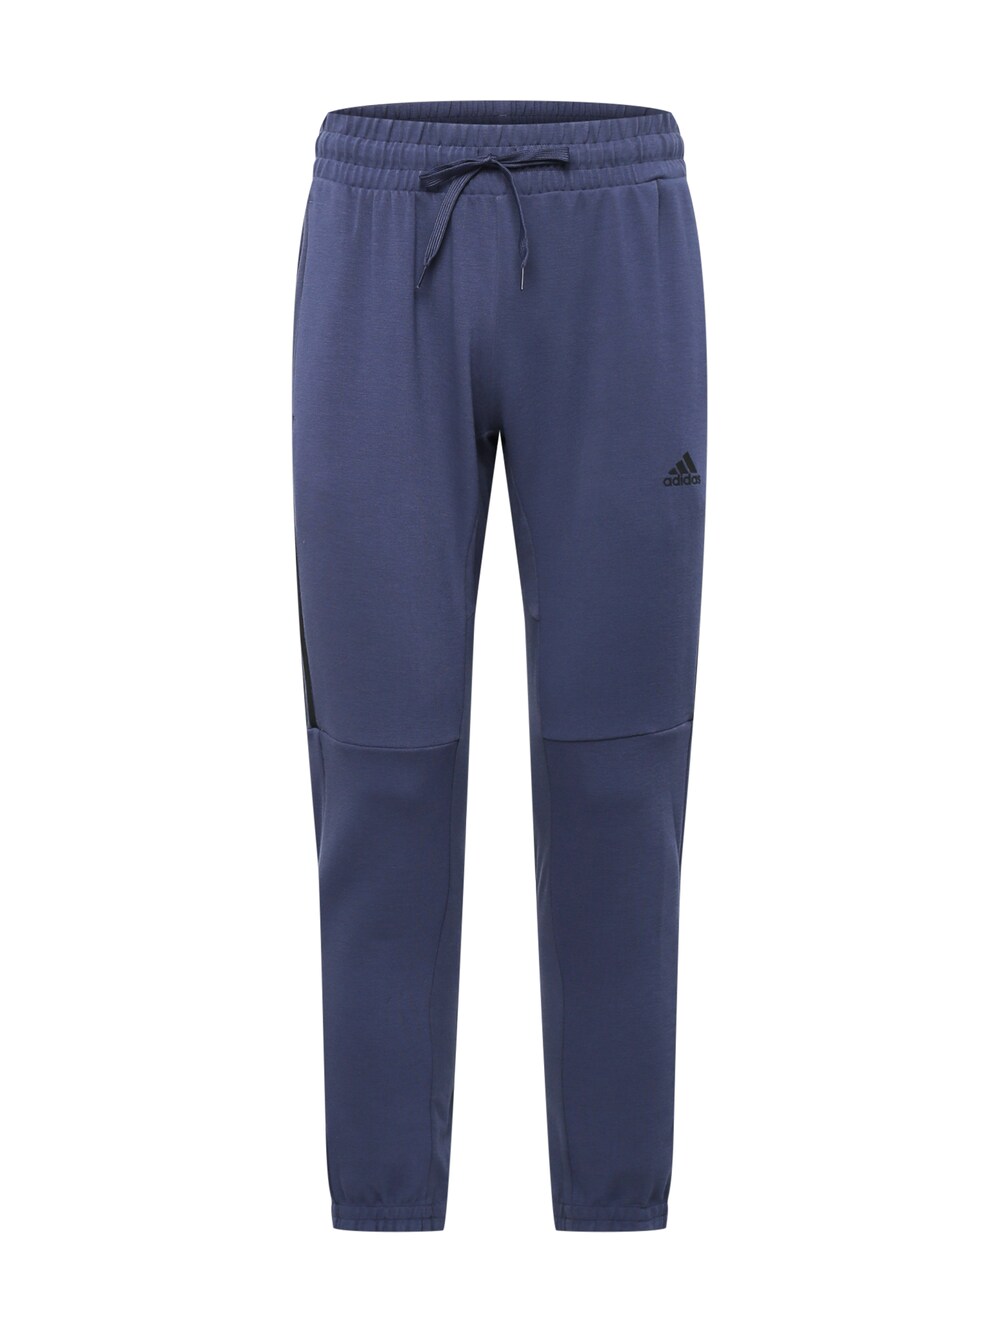 Зауженные тренировочные брюки Adidas Aeroready, пыльный синий